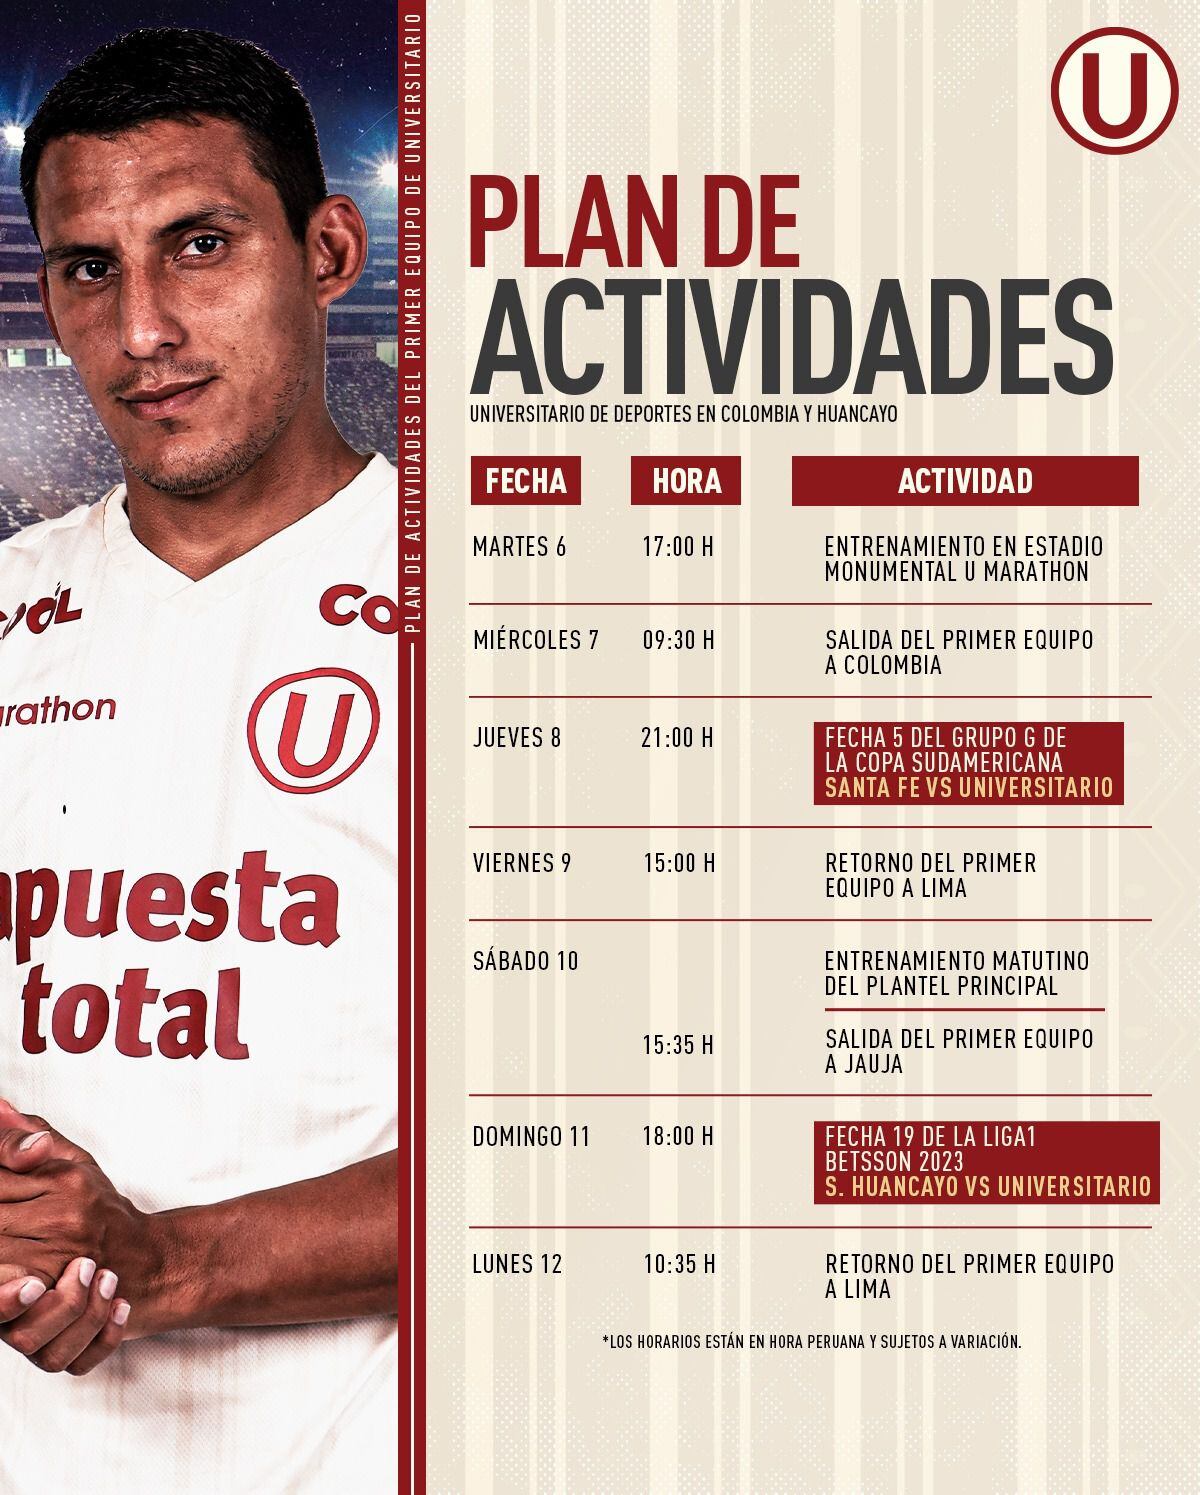 Conoce a detalle el plan de actividades de Universitario con miras al duelo ante Santa Fe y Sport Huancayo. (Foto: Universitario)